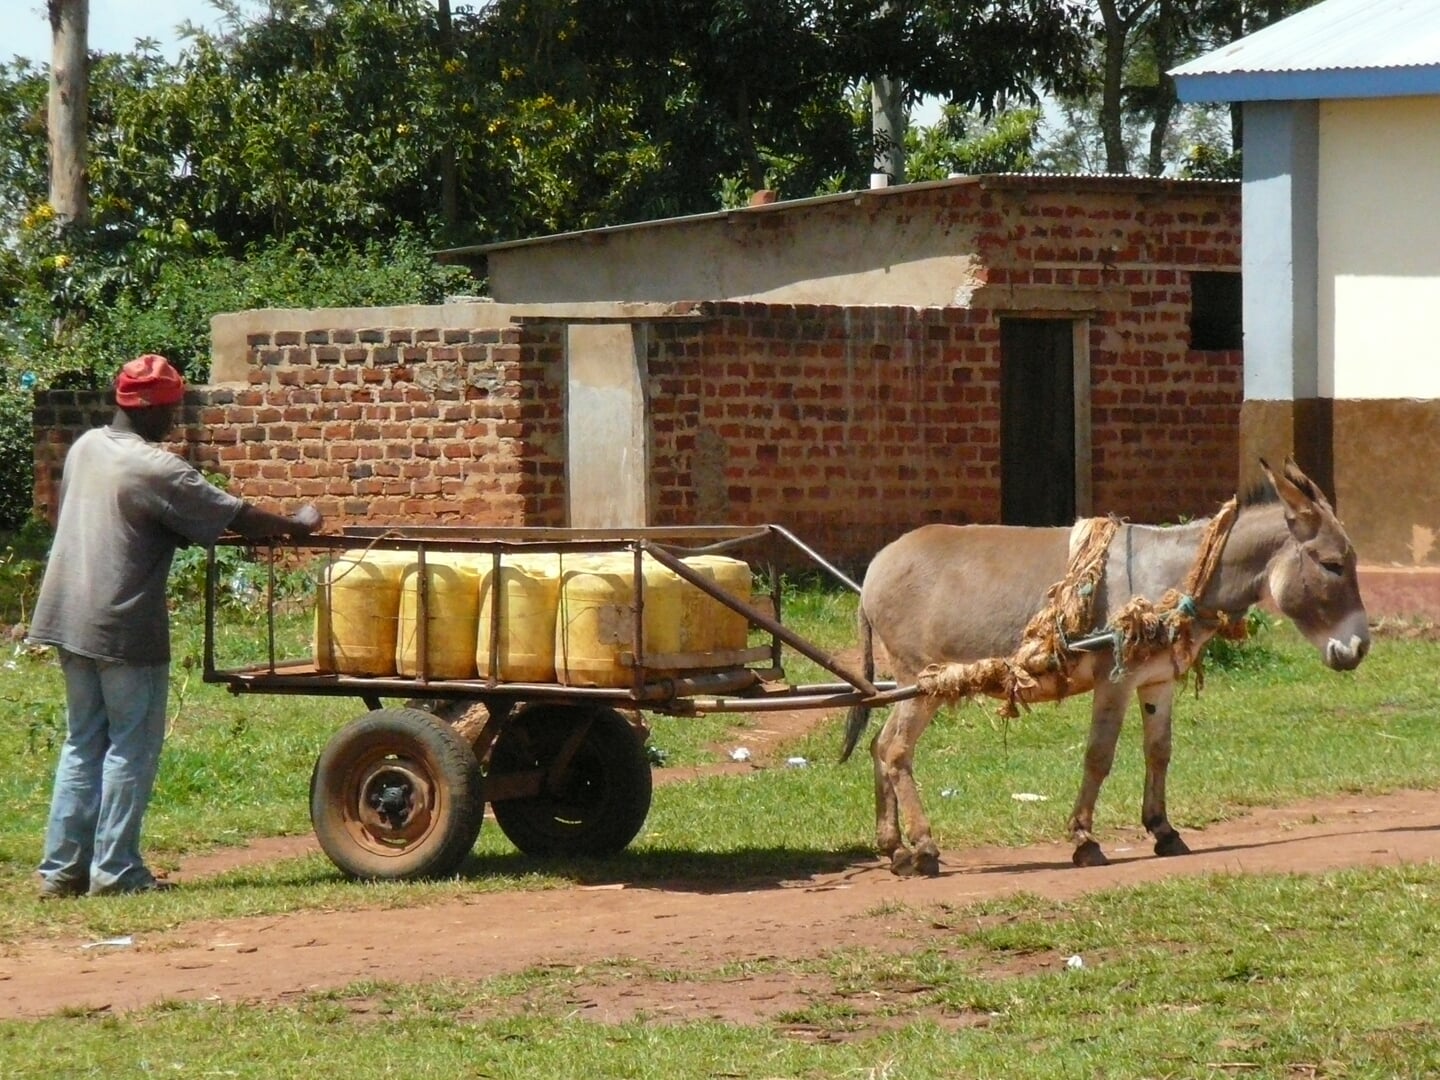 Naar de school kon alleen water via een ezel geleverd worden.